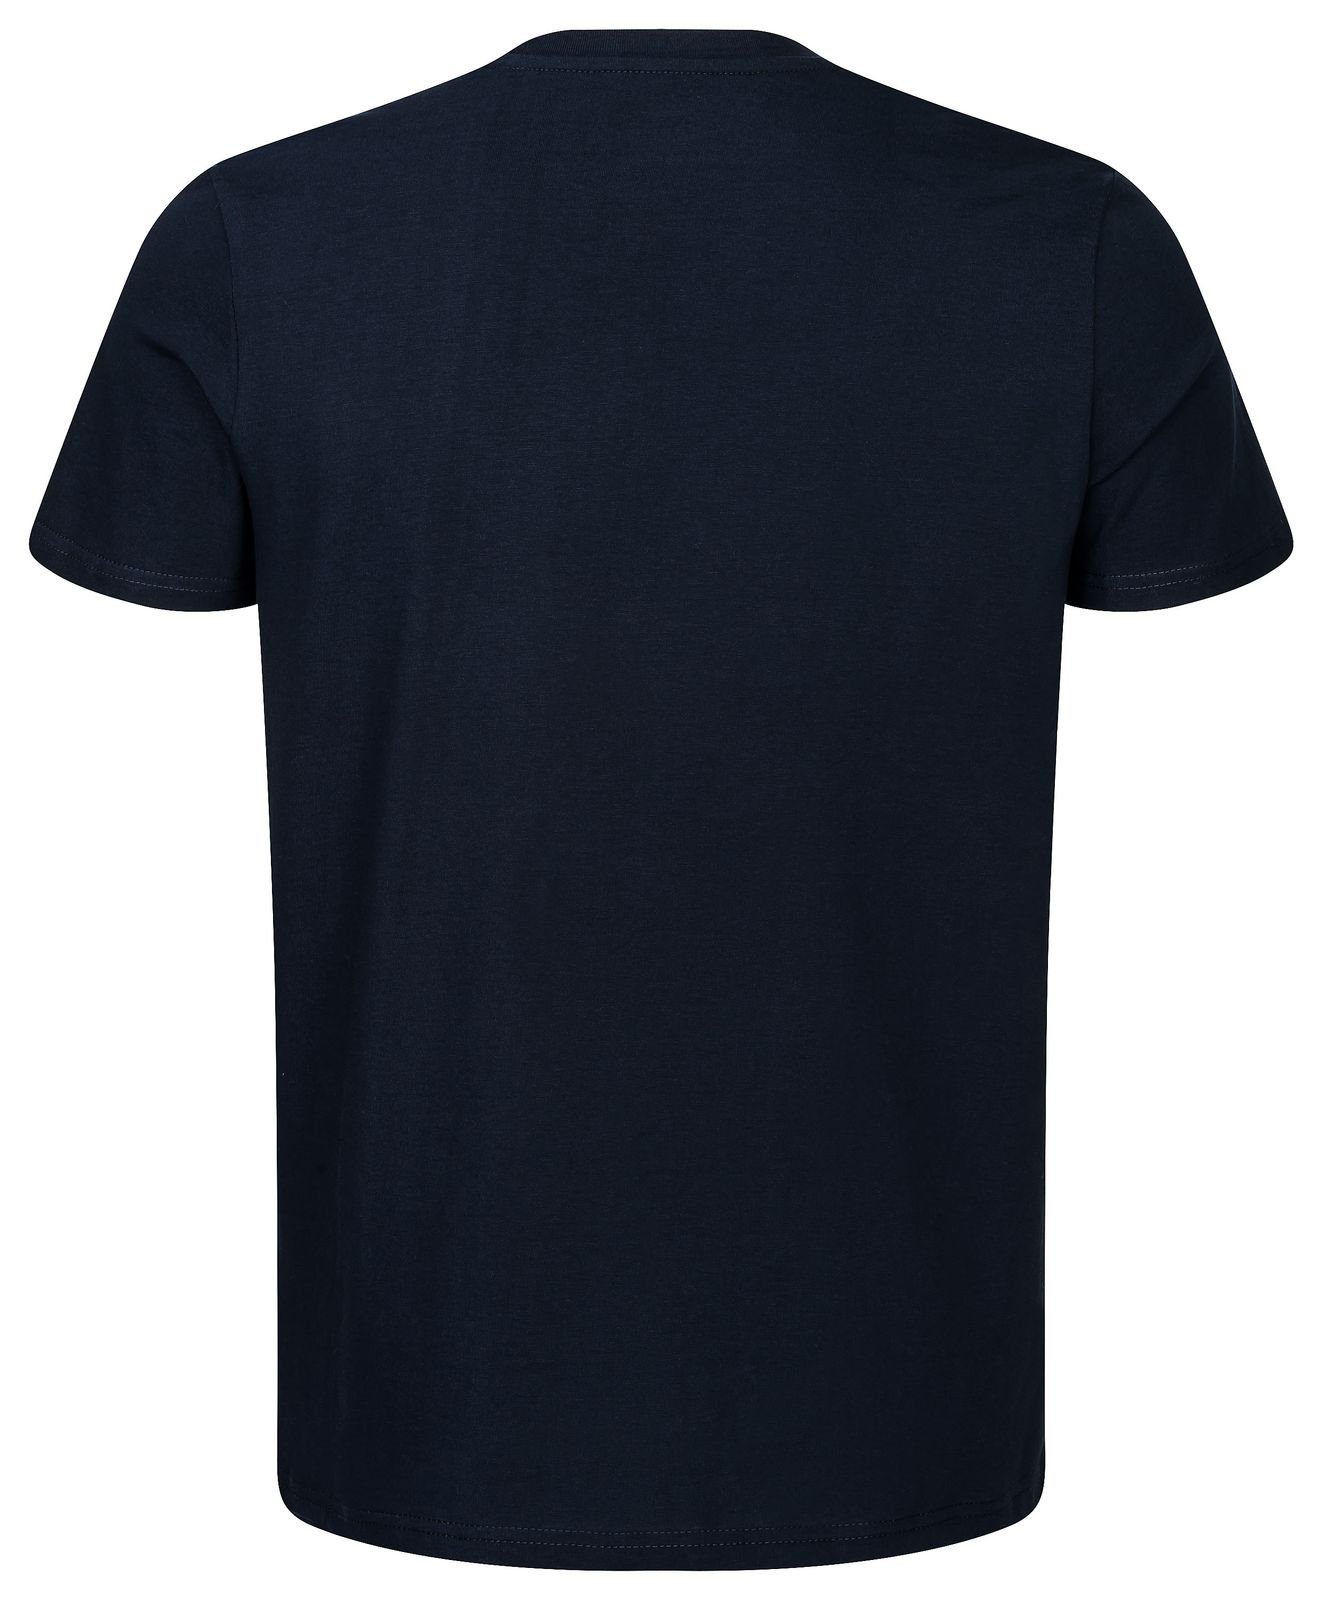 Gradnetz T-Shirt basic leather unisex & Biobaumwolle nachhaltig dunkelblau 100% fair